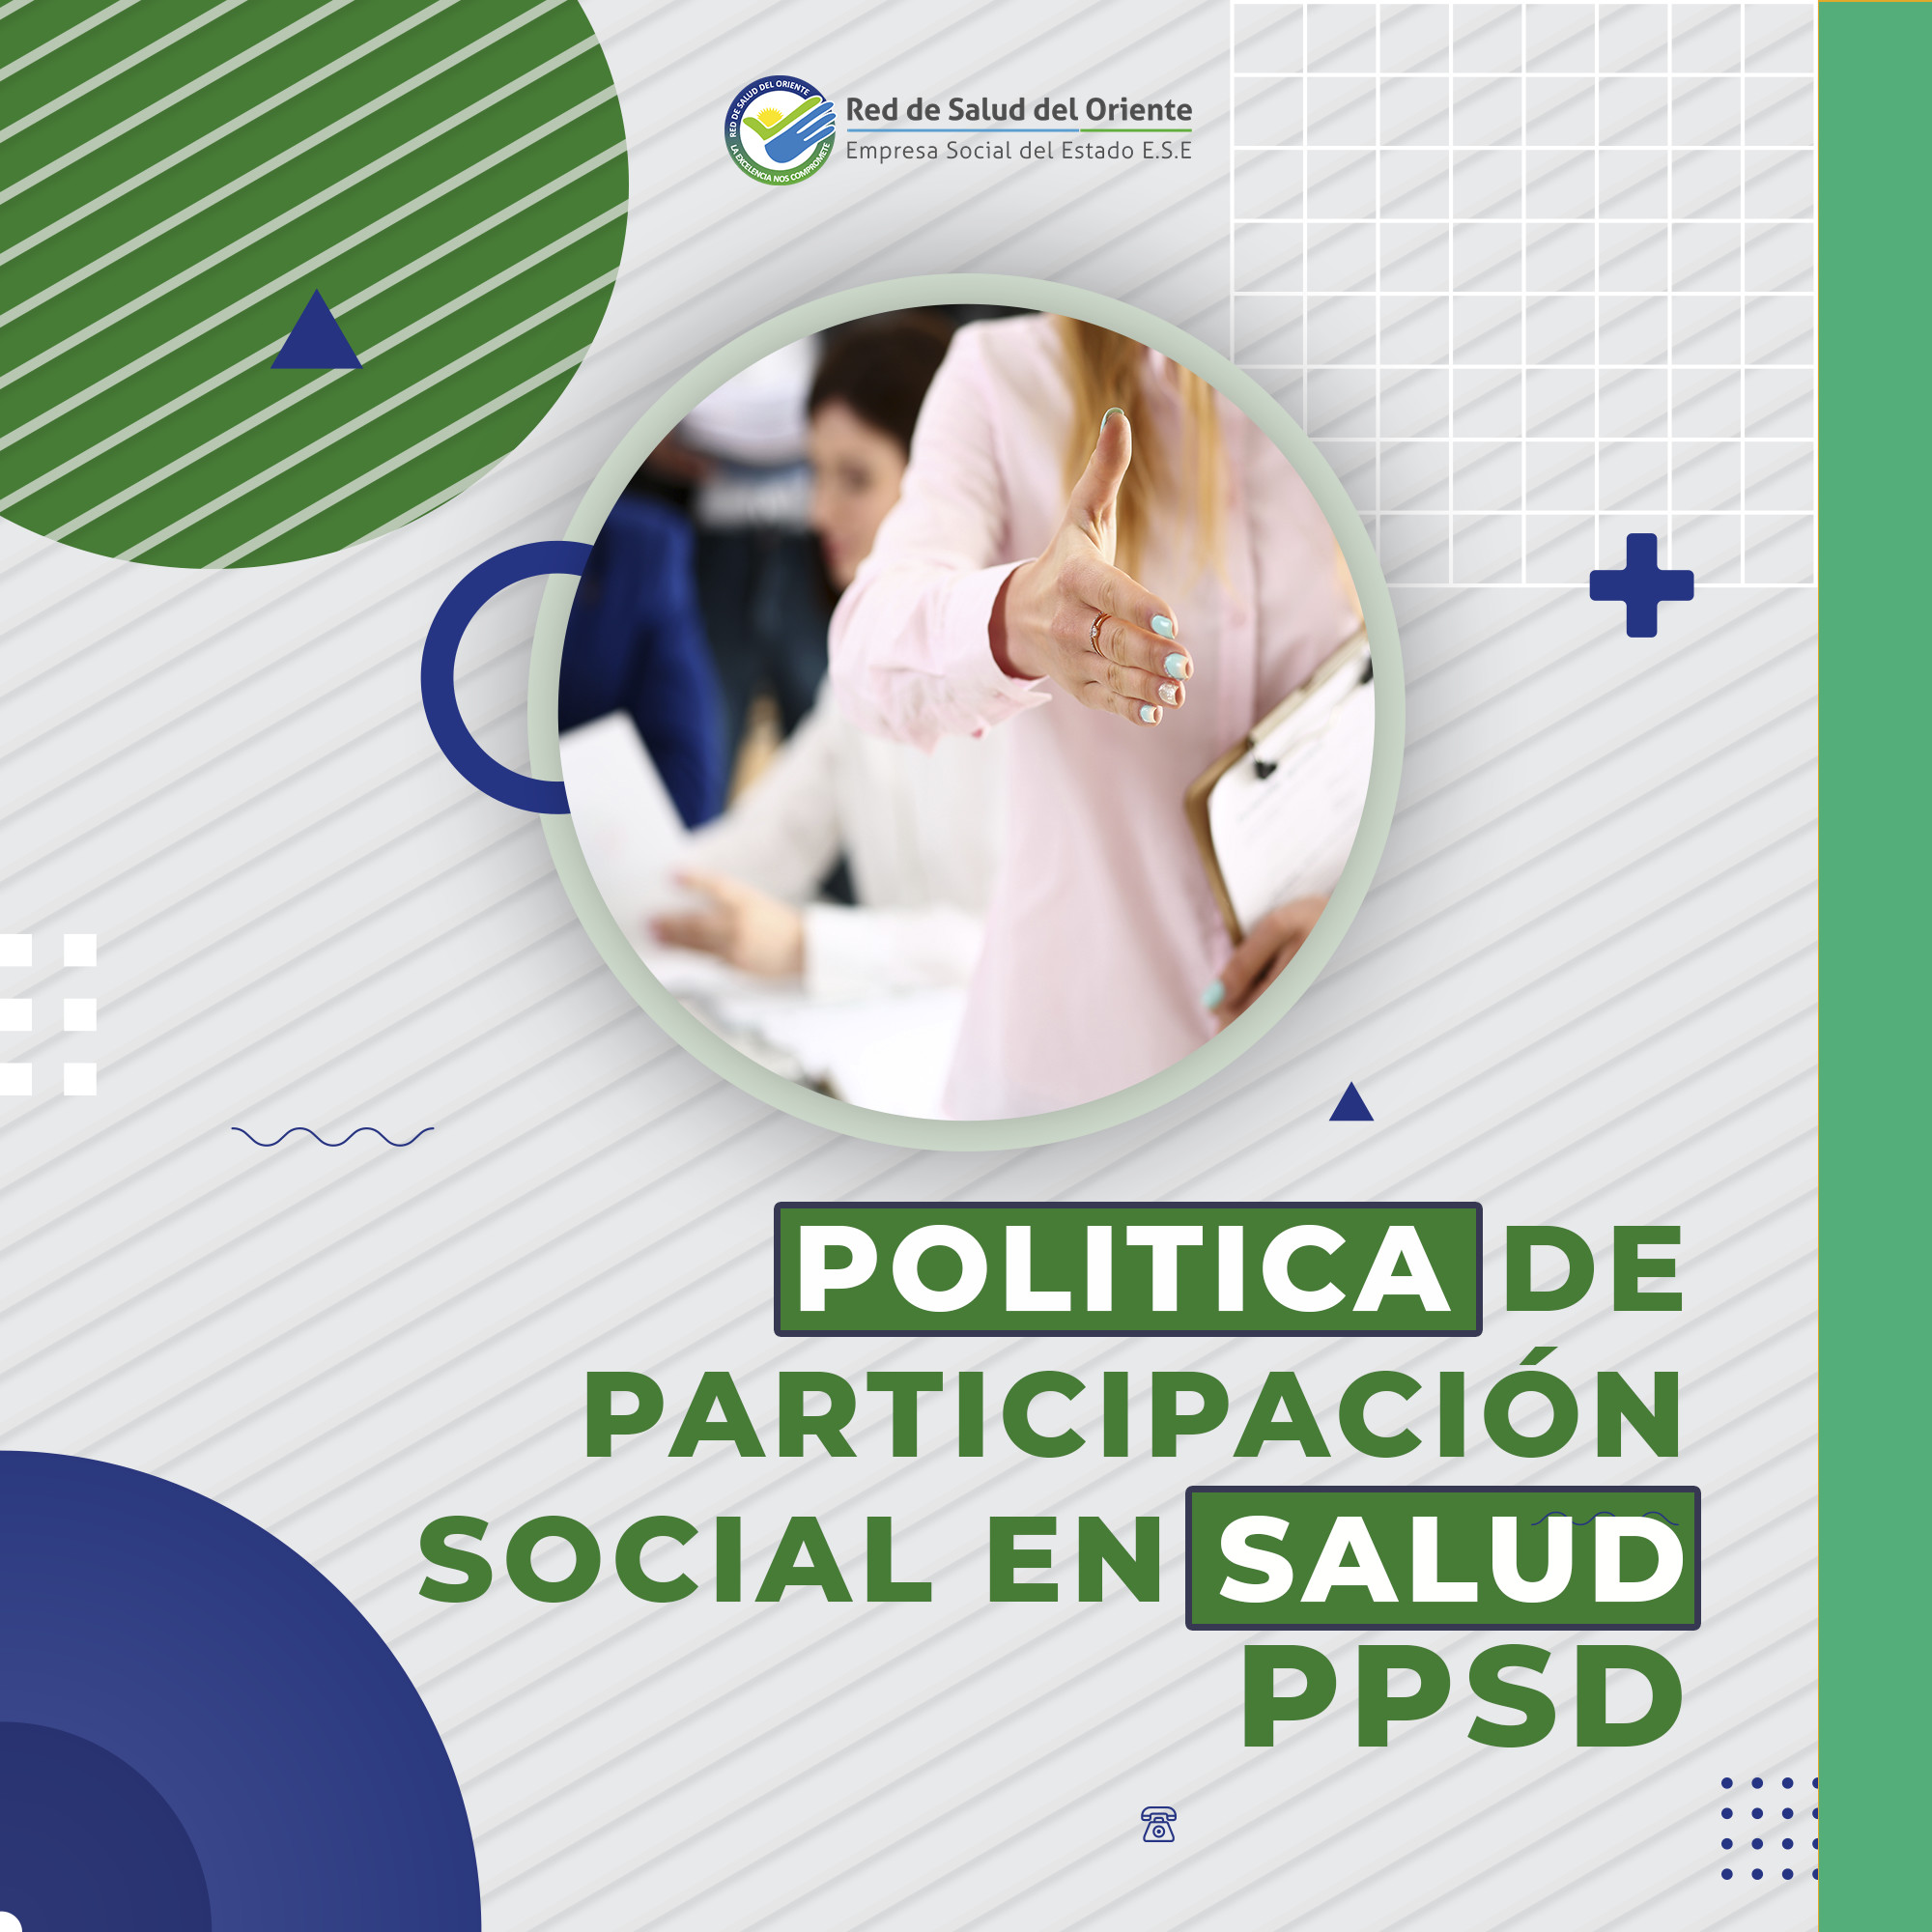 INDUCCION POLITICA DE PARTICIAPCION SOCIAL EN SALUD